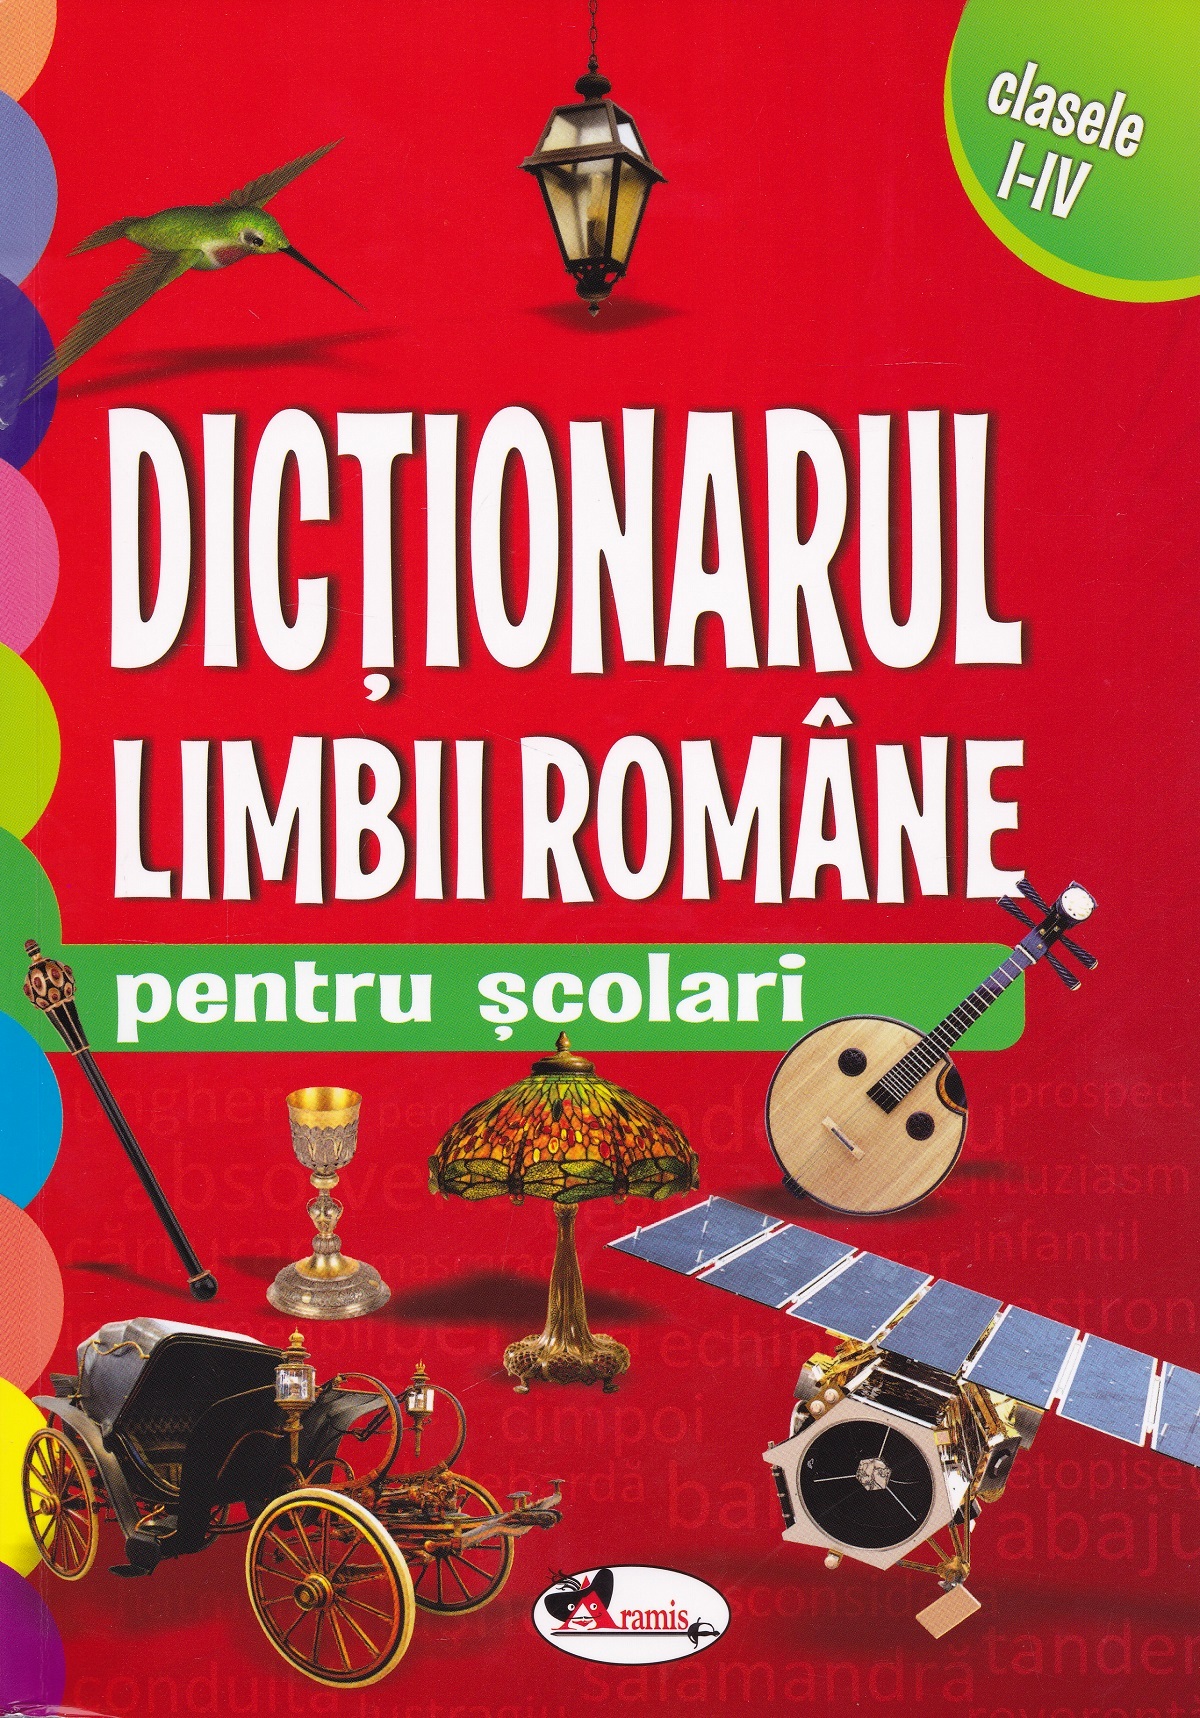 Dictionarul limbii romane pentru scolari - Clasele 1-4